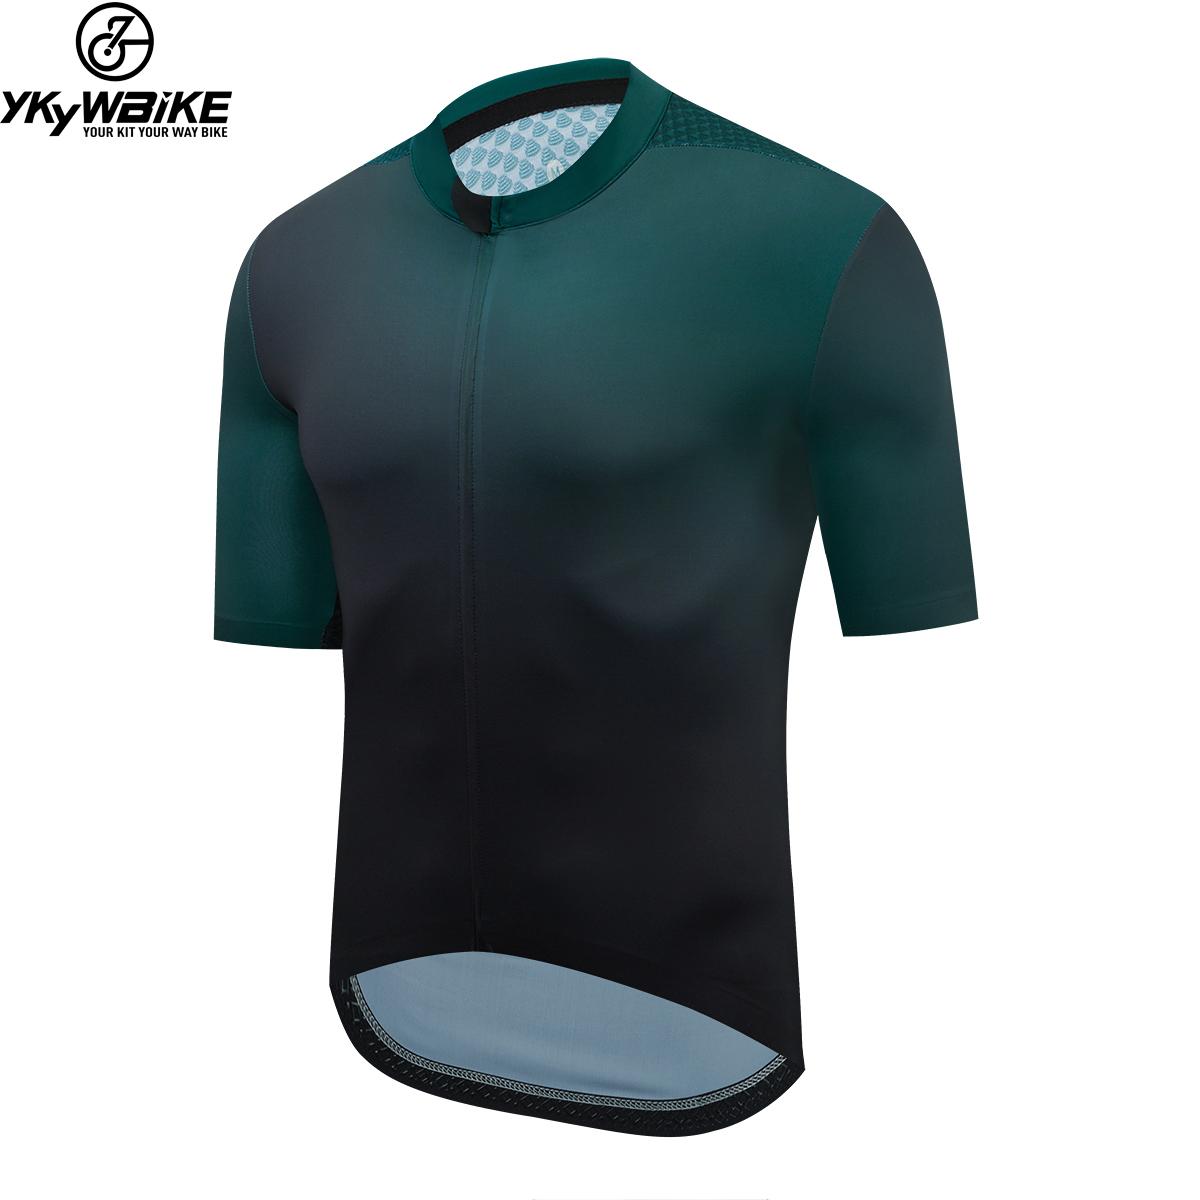 Ykywbike đàn ông đi xe đạp áo ngắn chuyên nghiệp Aero Jersey 5 màu Color: YJZ337 green Size: L